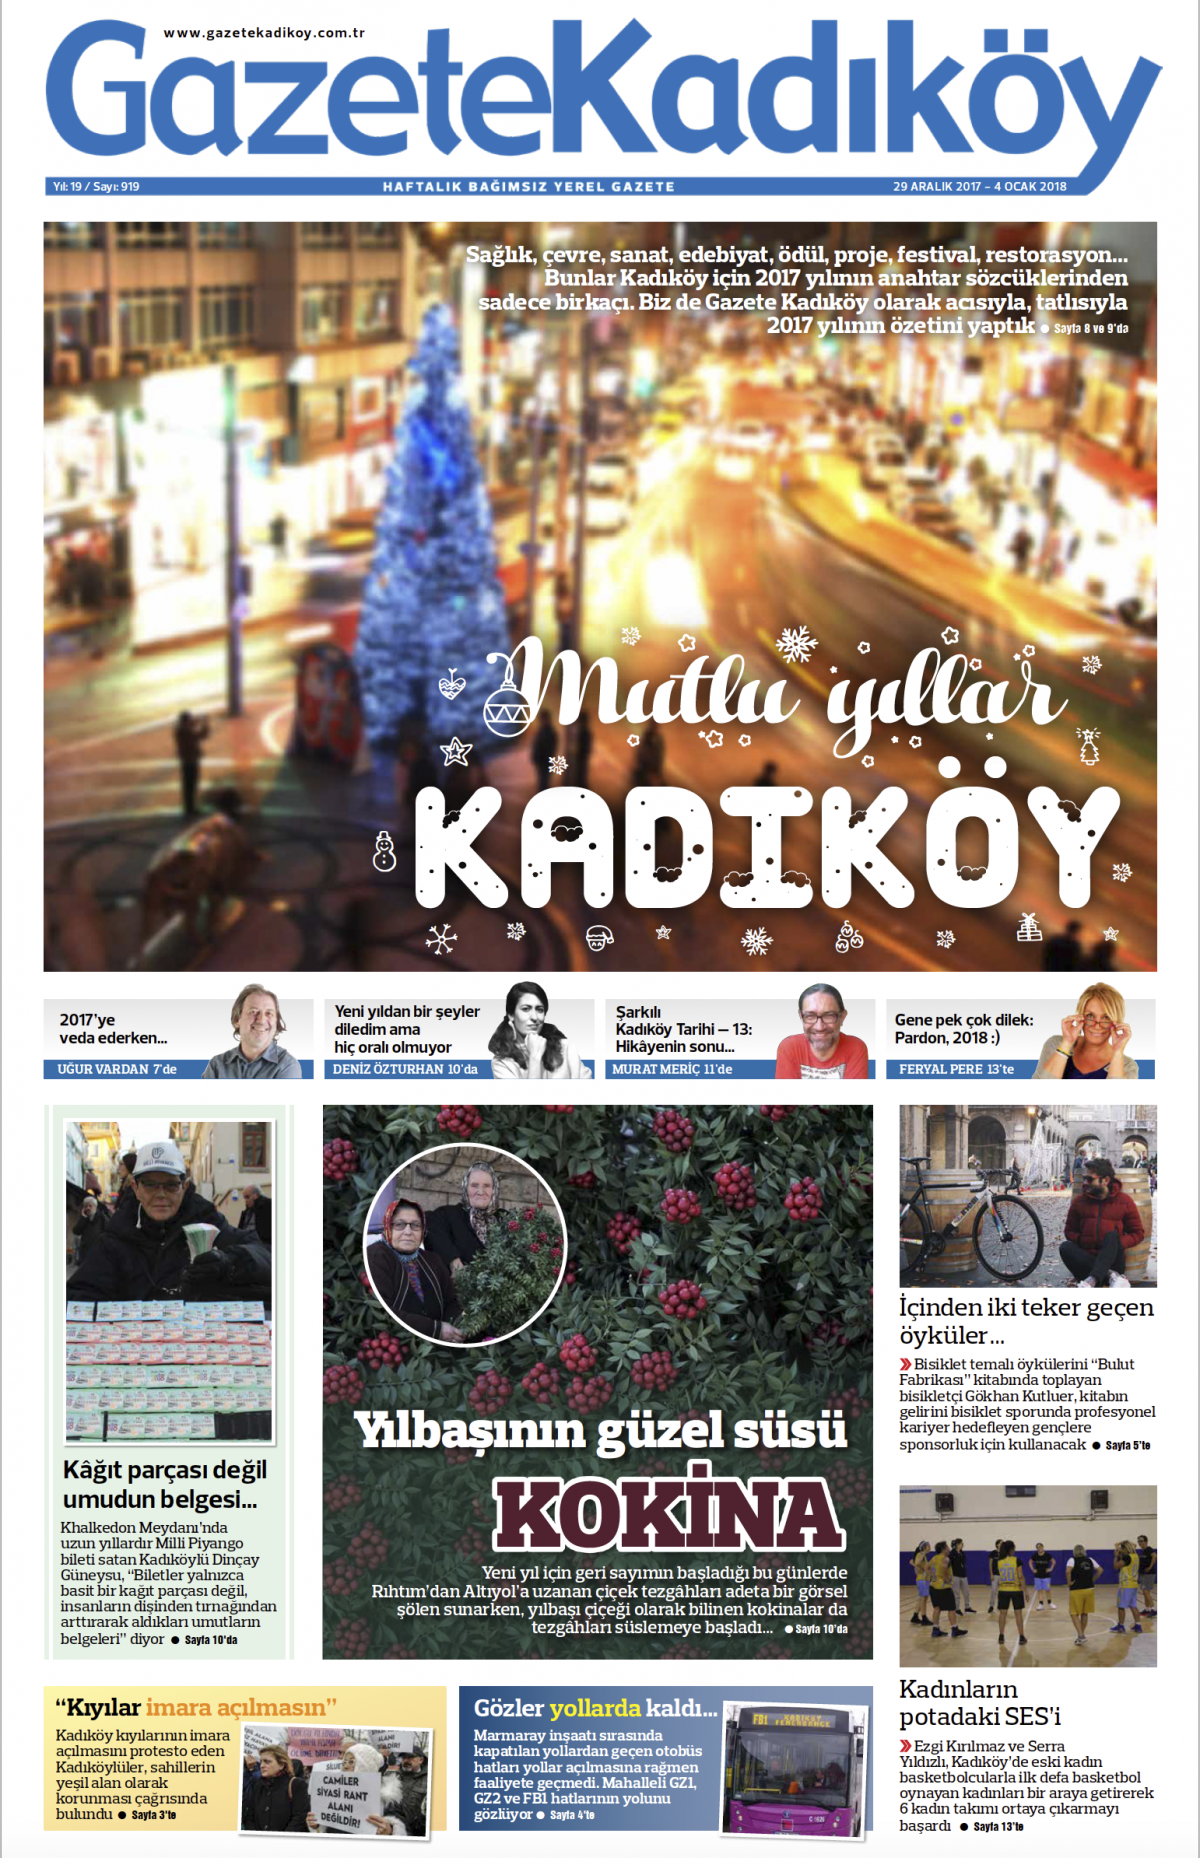 Gazete Kadıköy - 919. SAYI